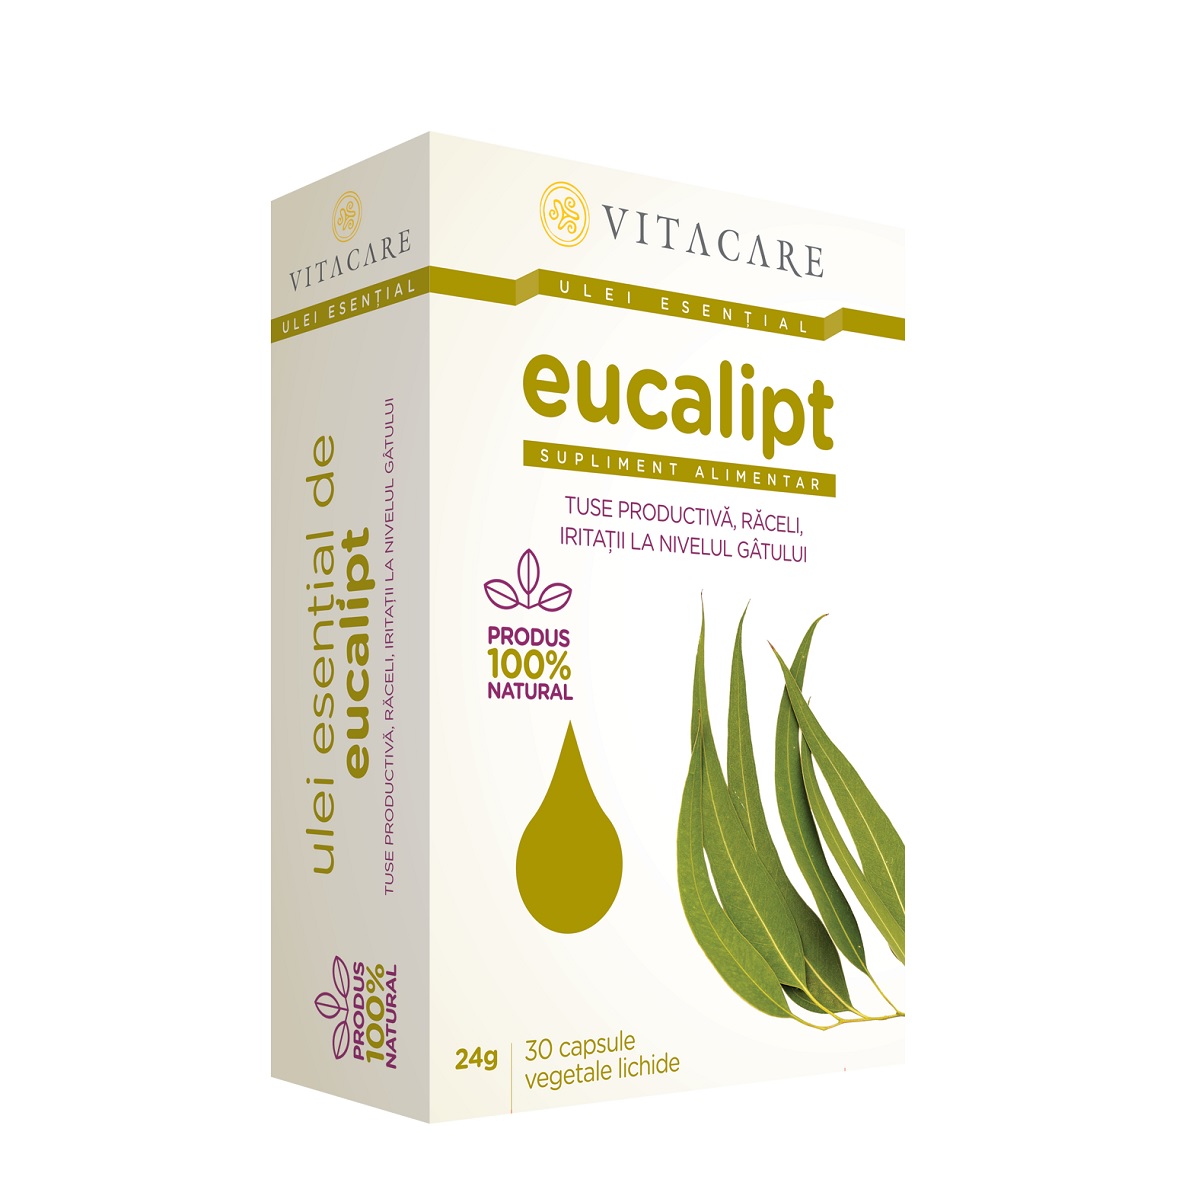 Respiratie usoara - Ulei esential eucalipt, 30 capsule, Vitacare, sinapis.ro